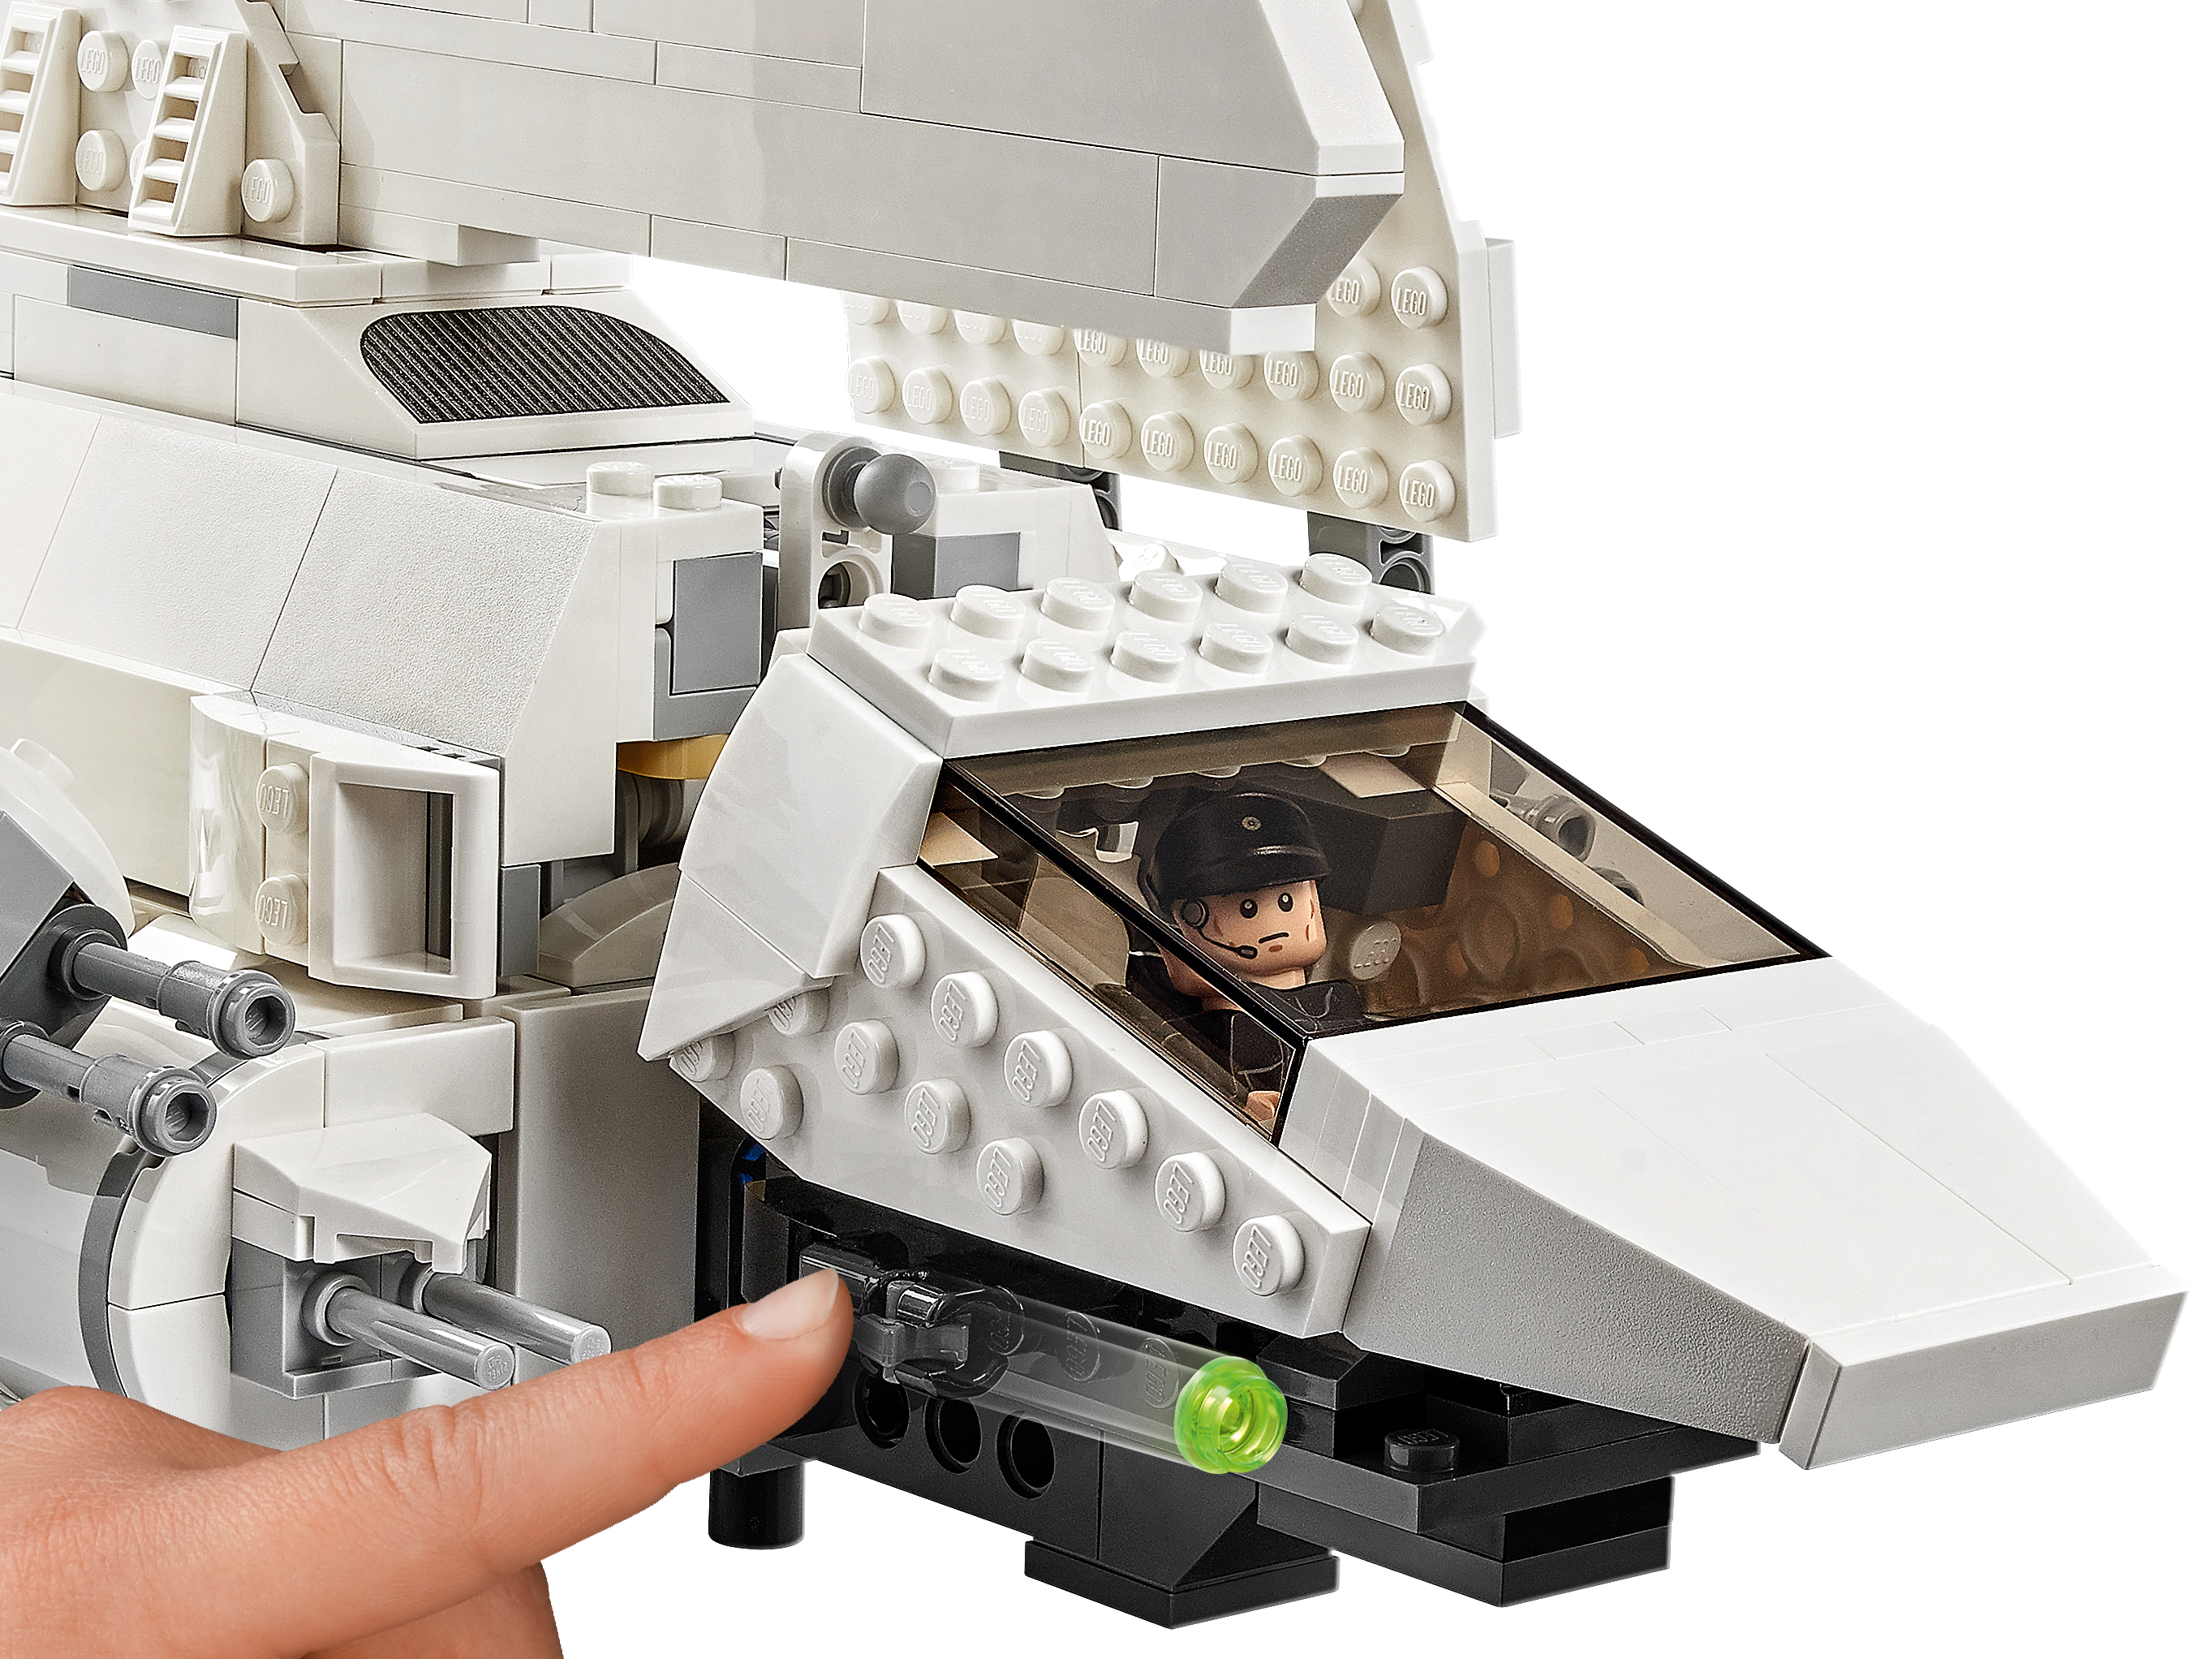 Lego ® Star Wars ™ 75302 Imperial Shuttle ™ neu&ovp 